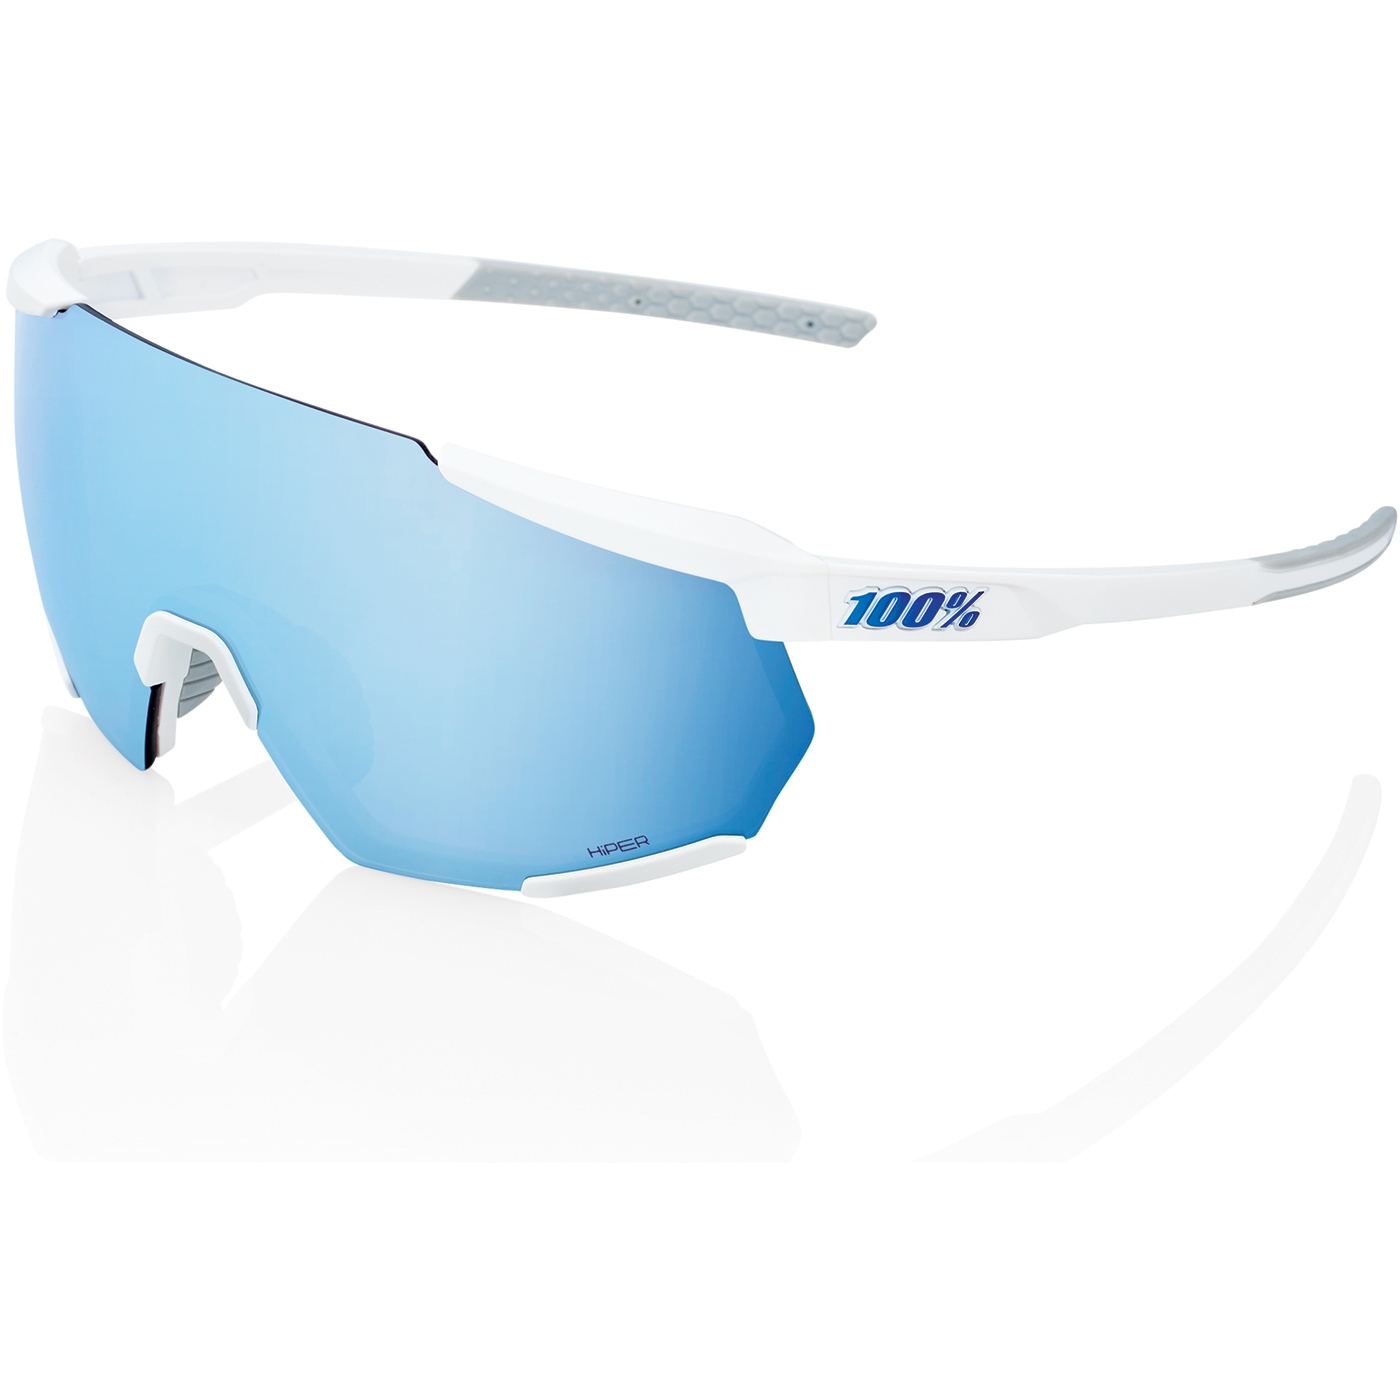 Foto van 100% Racetrap 3.0 Glasses - HiPER Mirror Lens - Matte White / Multilayer Blue + Clear